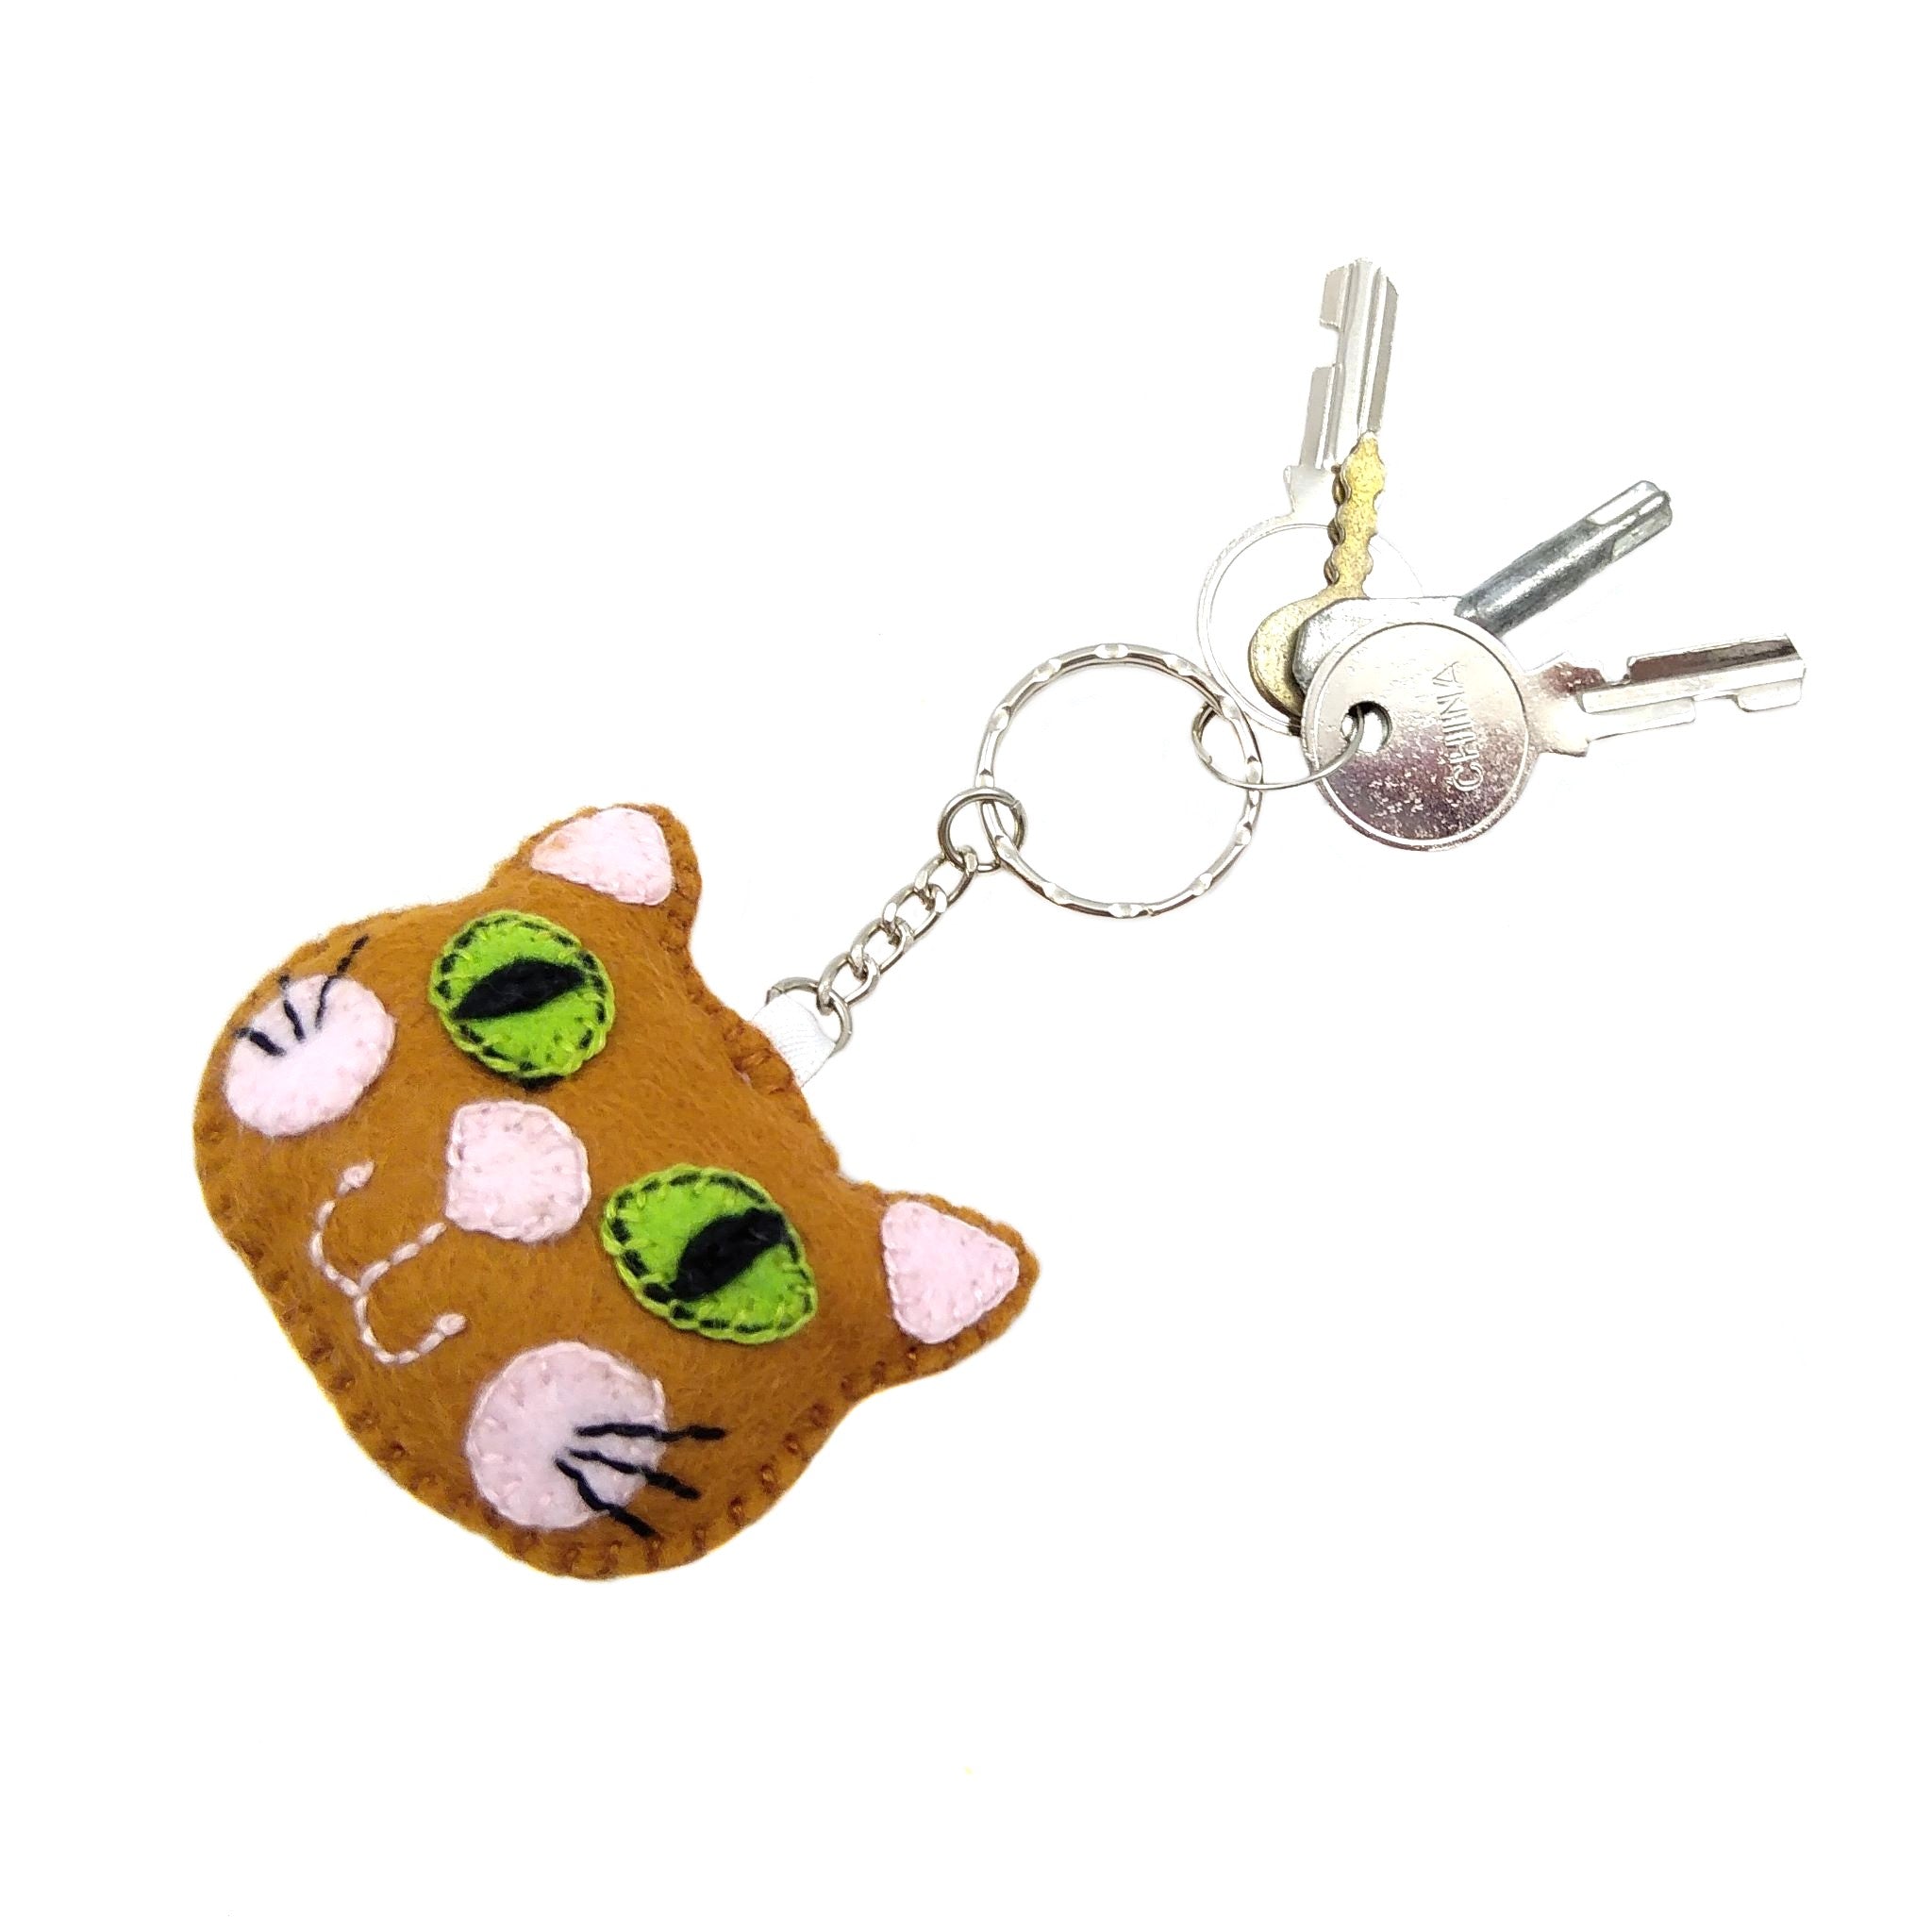 Ginger cat keyring with keys